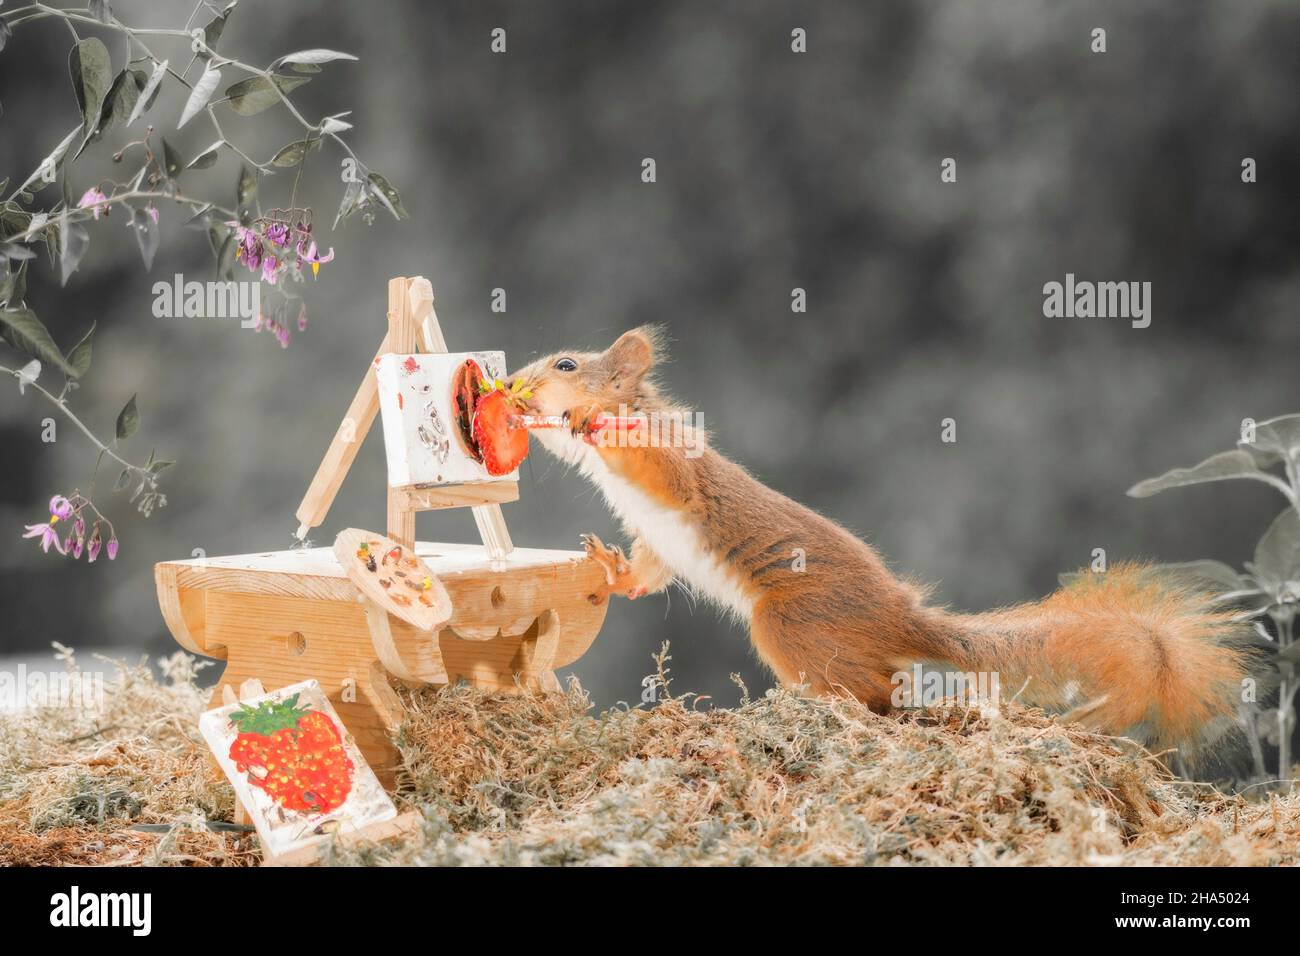 Nahaufnahme eines roten Eichhörnchens, das mit einem Tisch steht, der einen Pinsel hält und malt Stockfoto